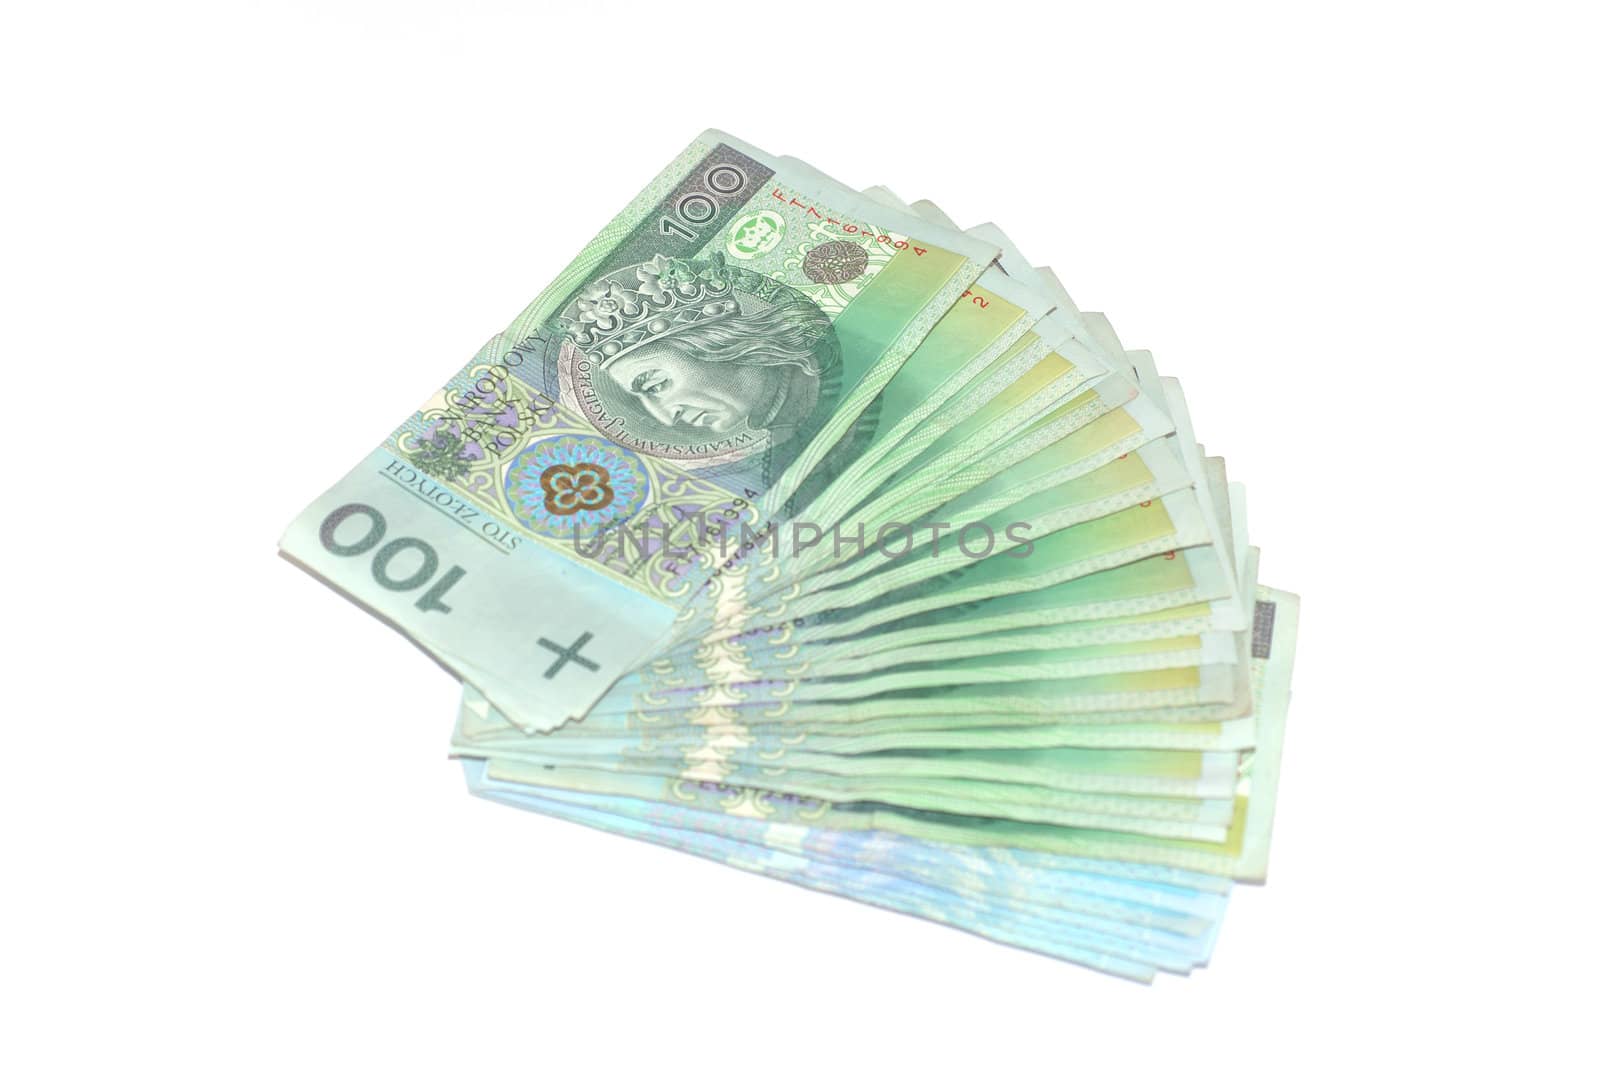 Polish Money by wojciechkozlowski